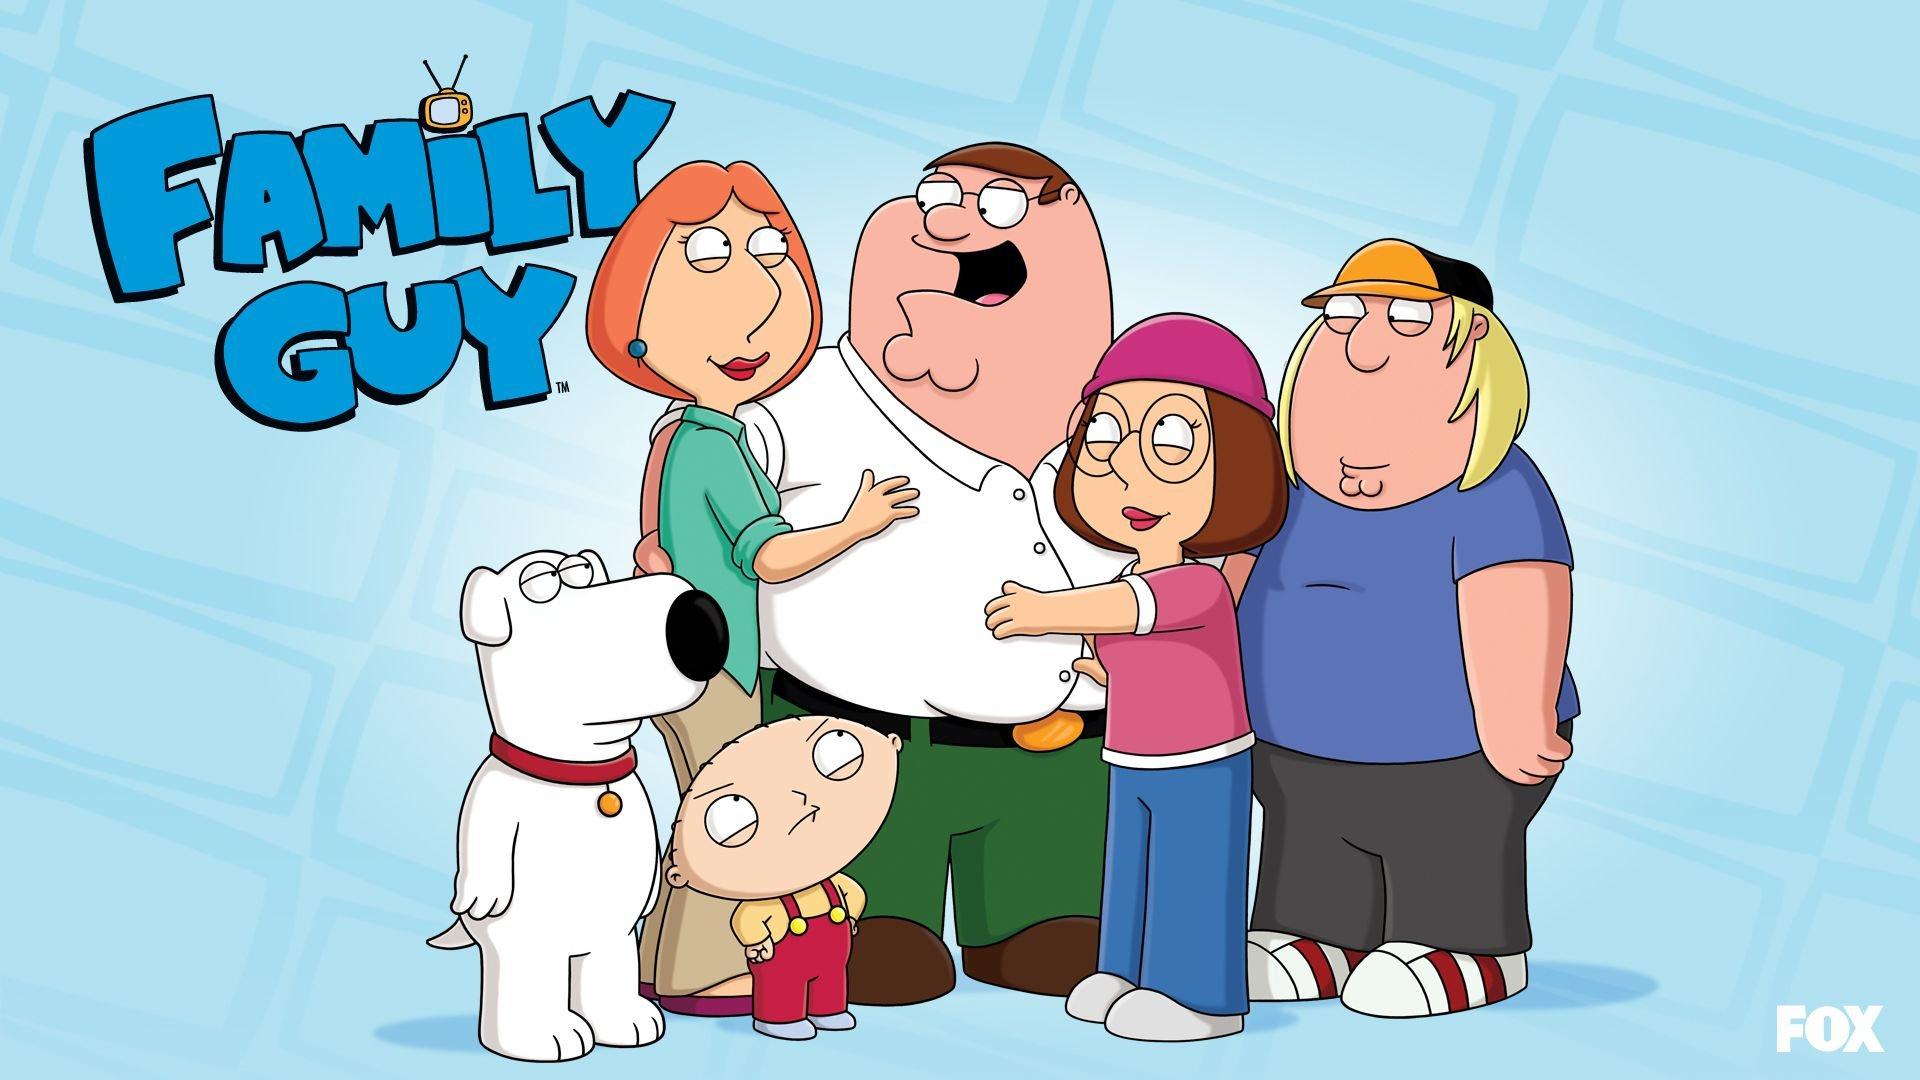 Family Guy wallpaper 1920x1080 Full HD (1080p) desktop background